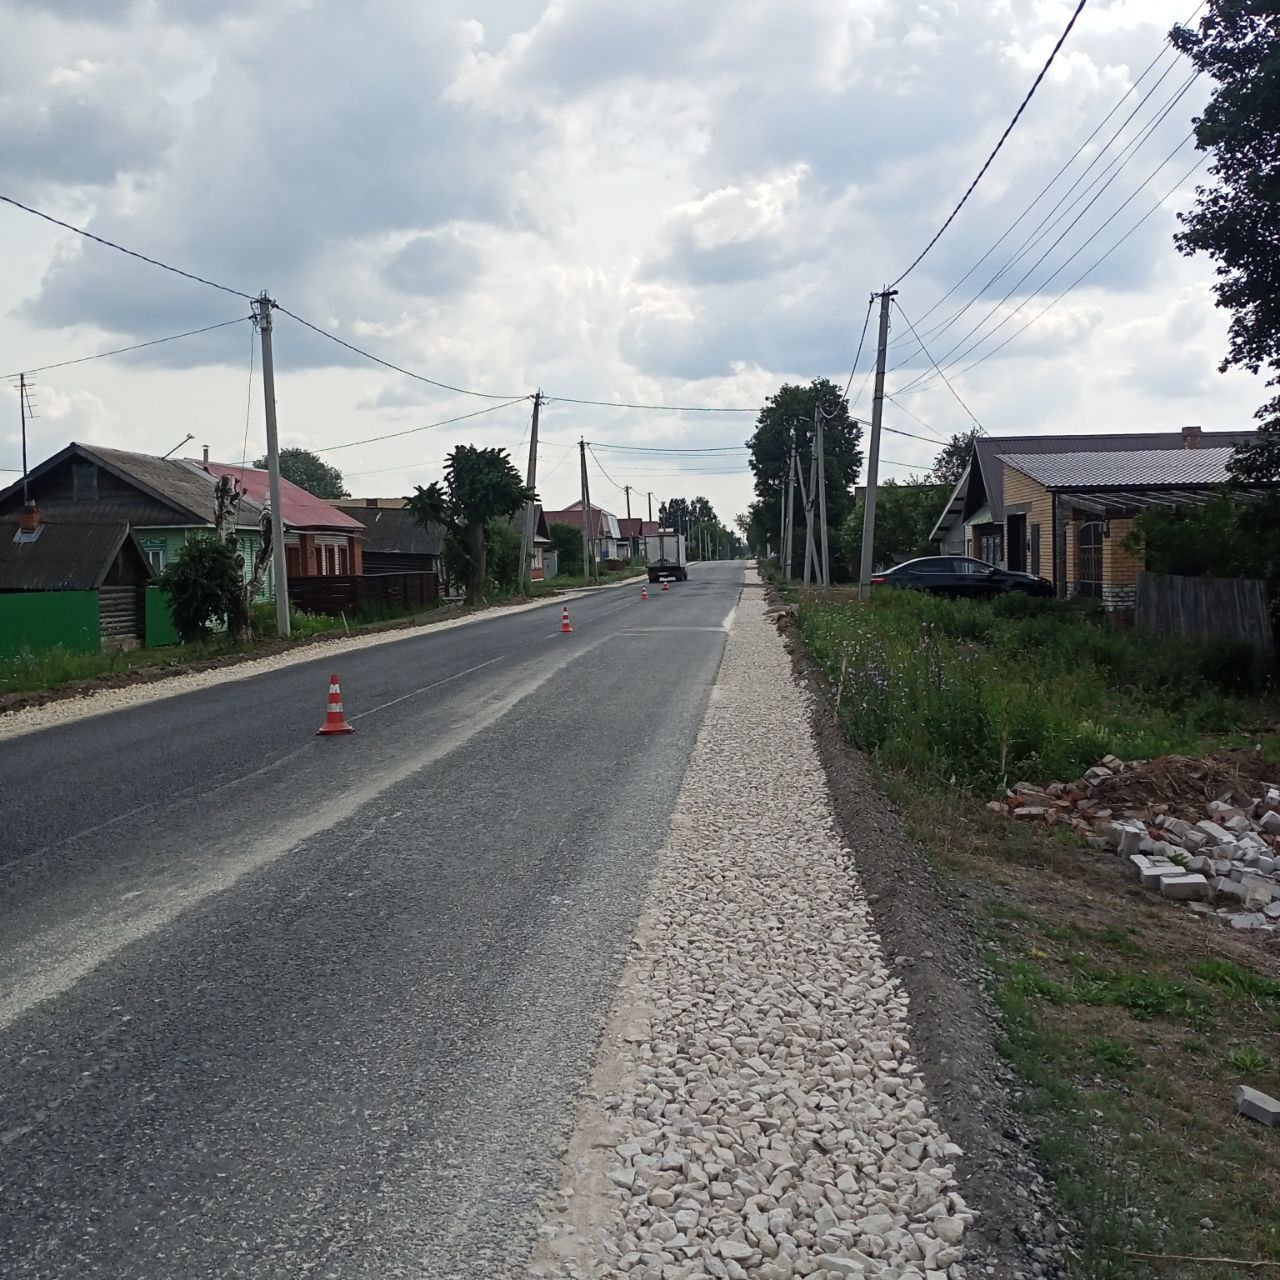 1,4 километра дороги отремонтировали в Йошкар-Оле